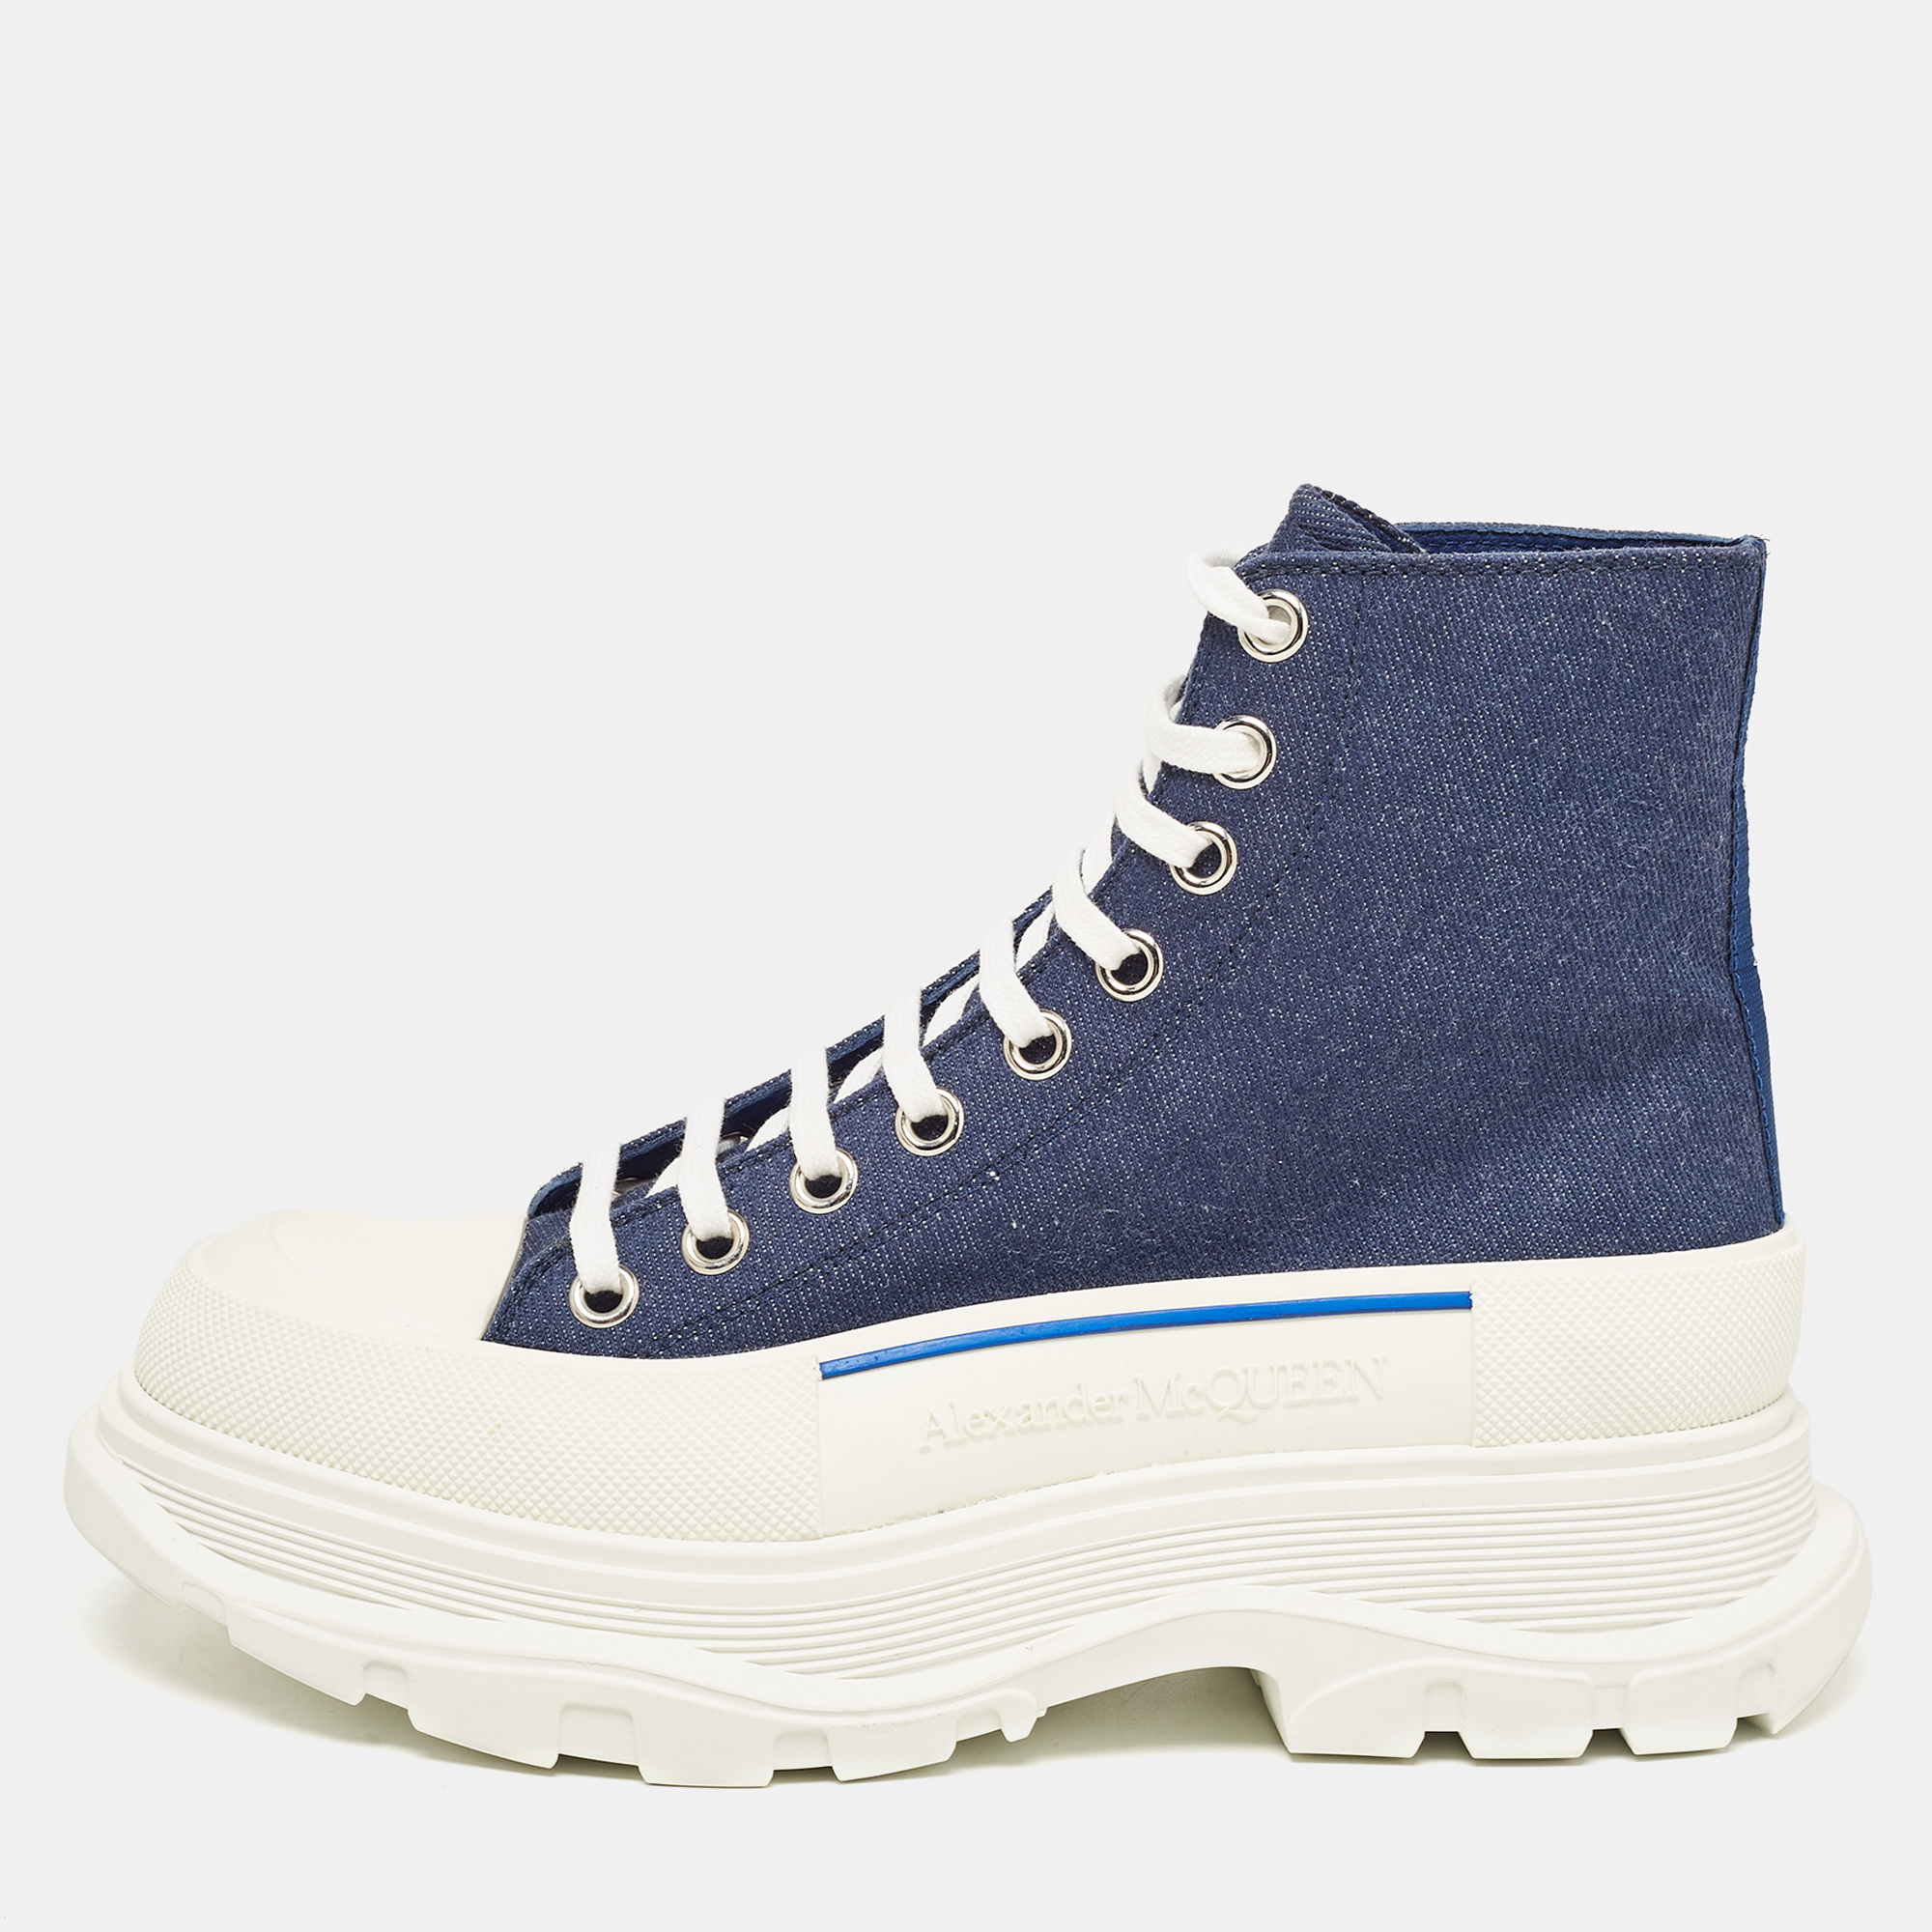 Alexander mcqueen blue denim tread slick high top sneakers size 40.5